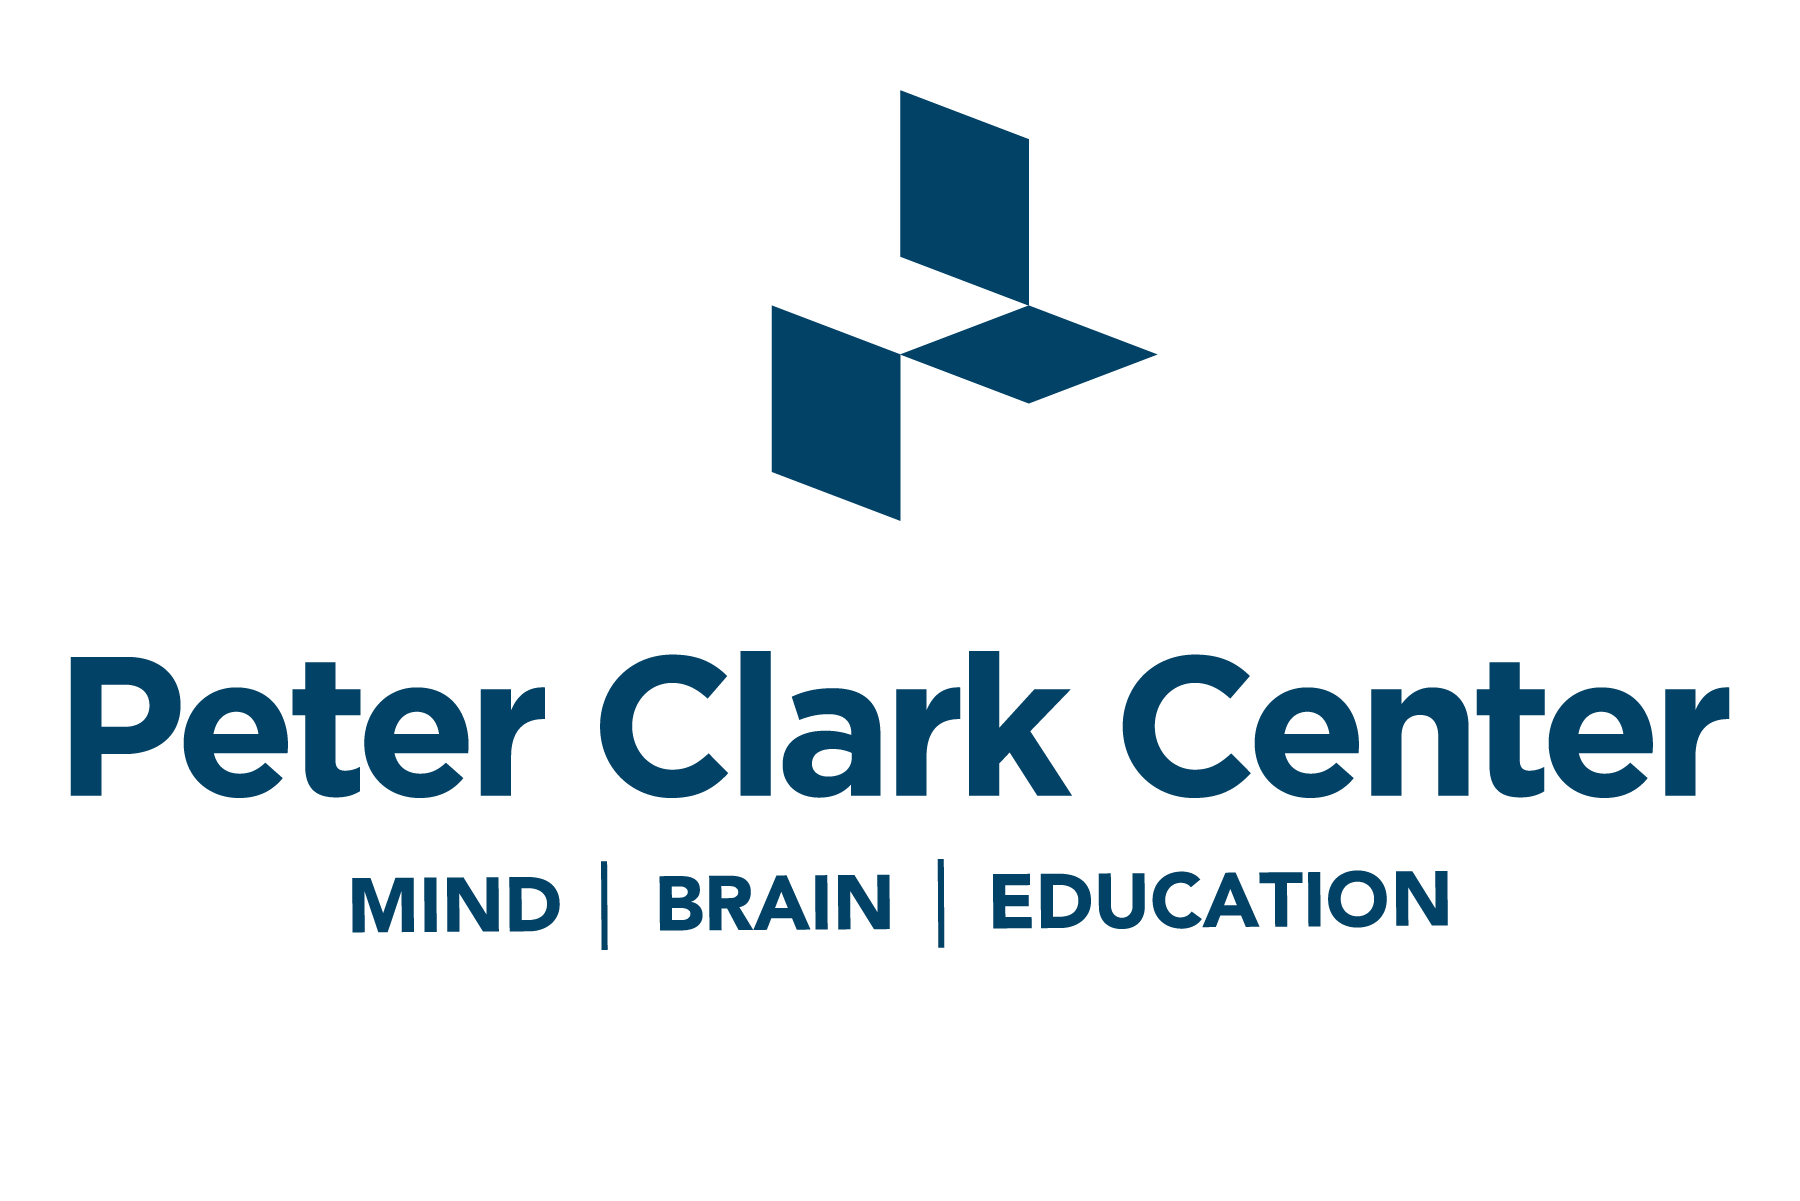 The Peter Clark Center